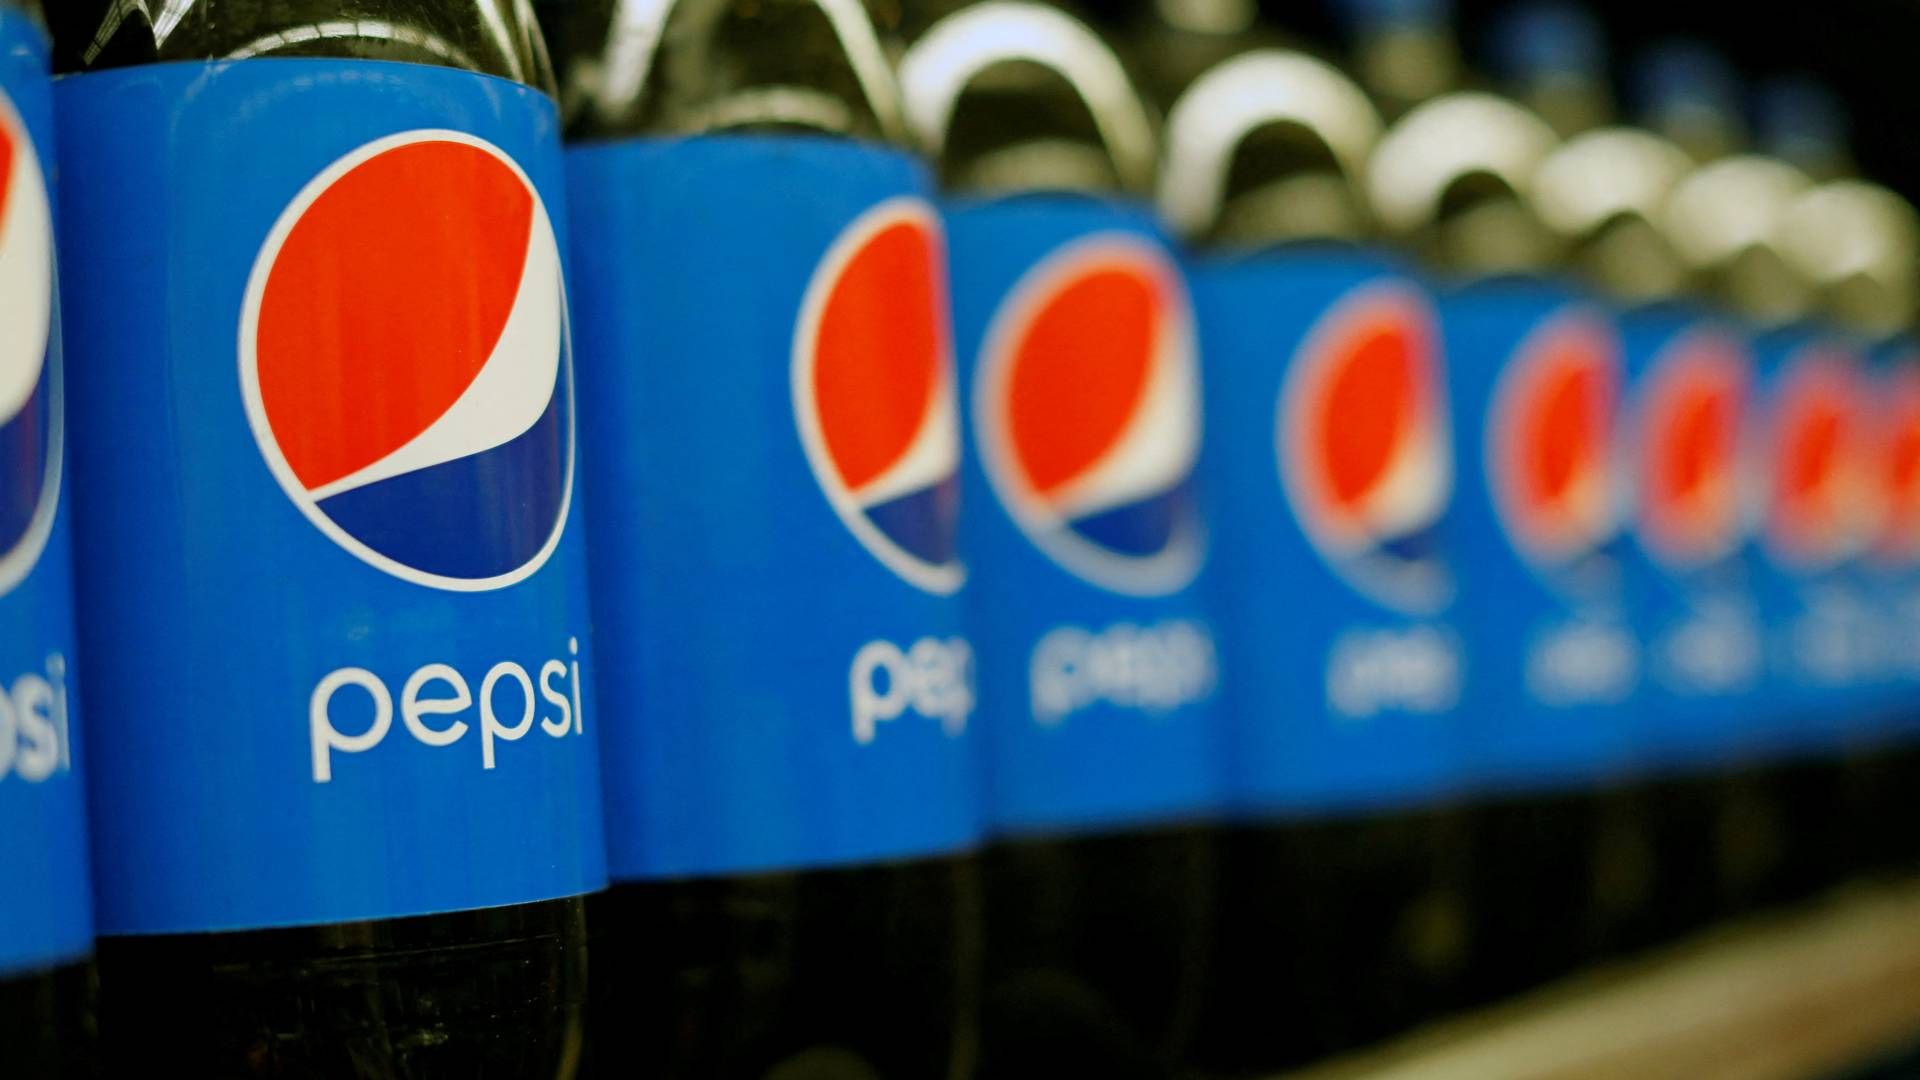 PepsiCo er kommet i myndighedernes søgelys på grund af anklager om plastikforurening. | Foto: Mario Anzuoni